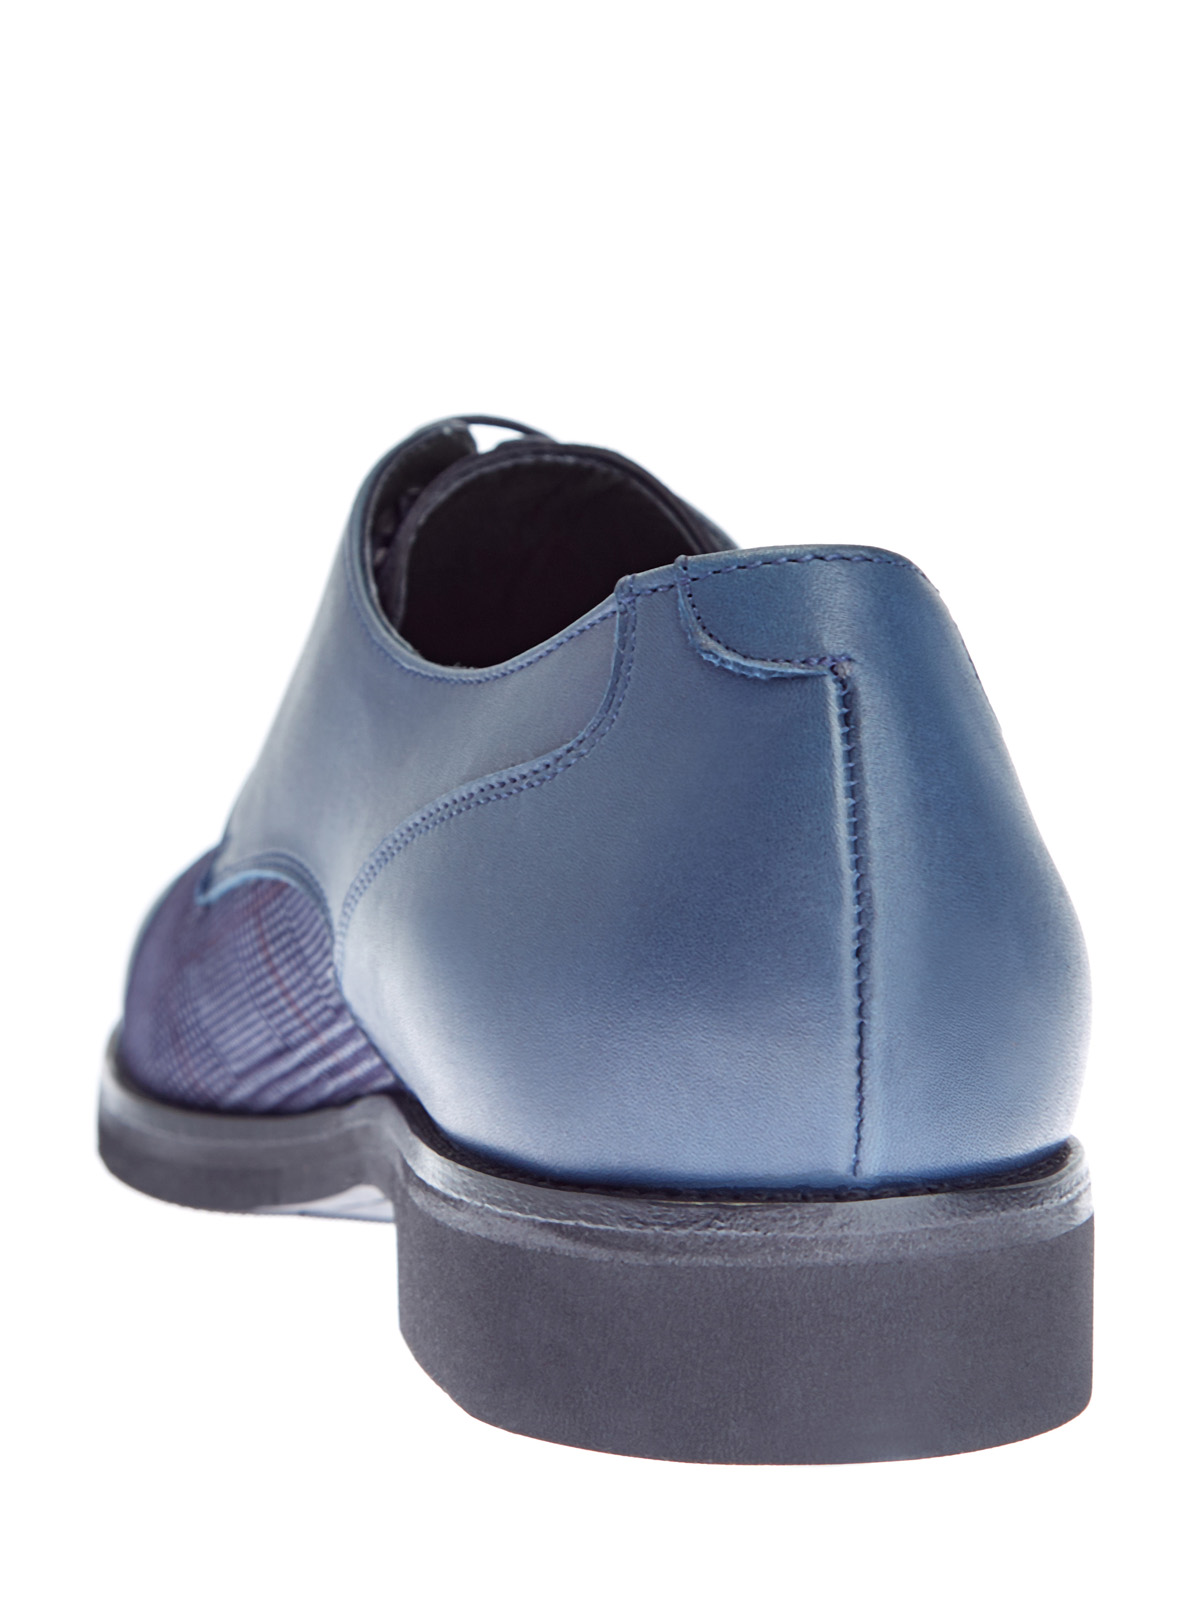 Кожаные туфли-дерби с принтом «Принц Уэльский» MORESCHI, цвет синий, размер 40.5;41;42;42.5;43;43.5;44 - фото 4